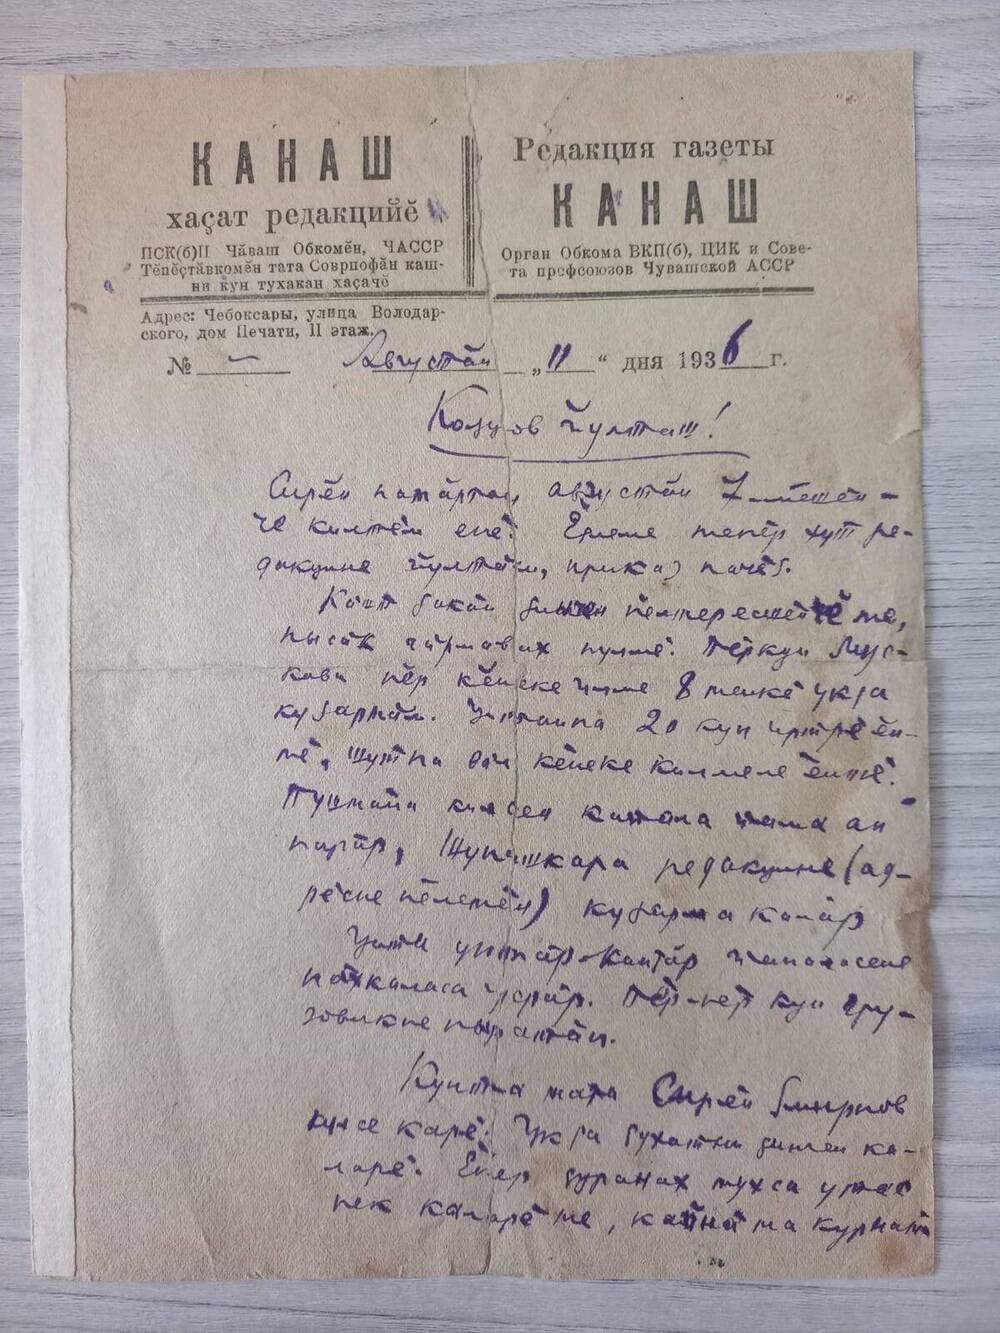 Документ. Письмо Кольцову Константину Михайловичу написано на бланке редакции газеты Канаш.